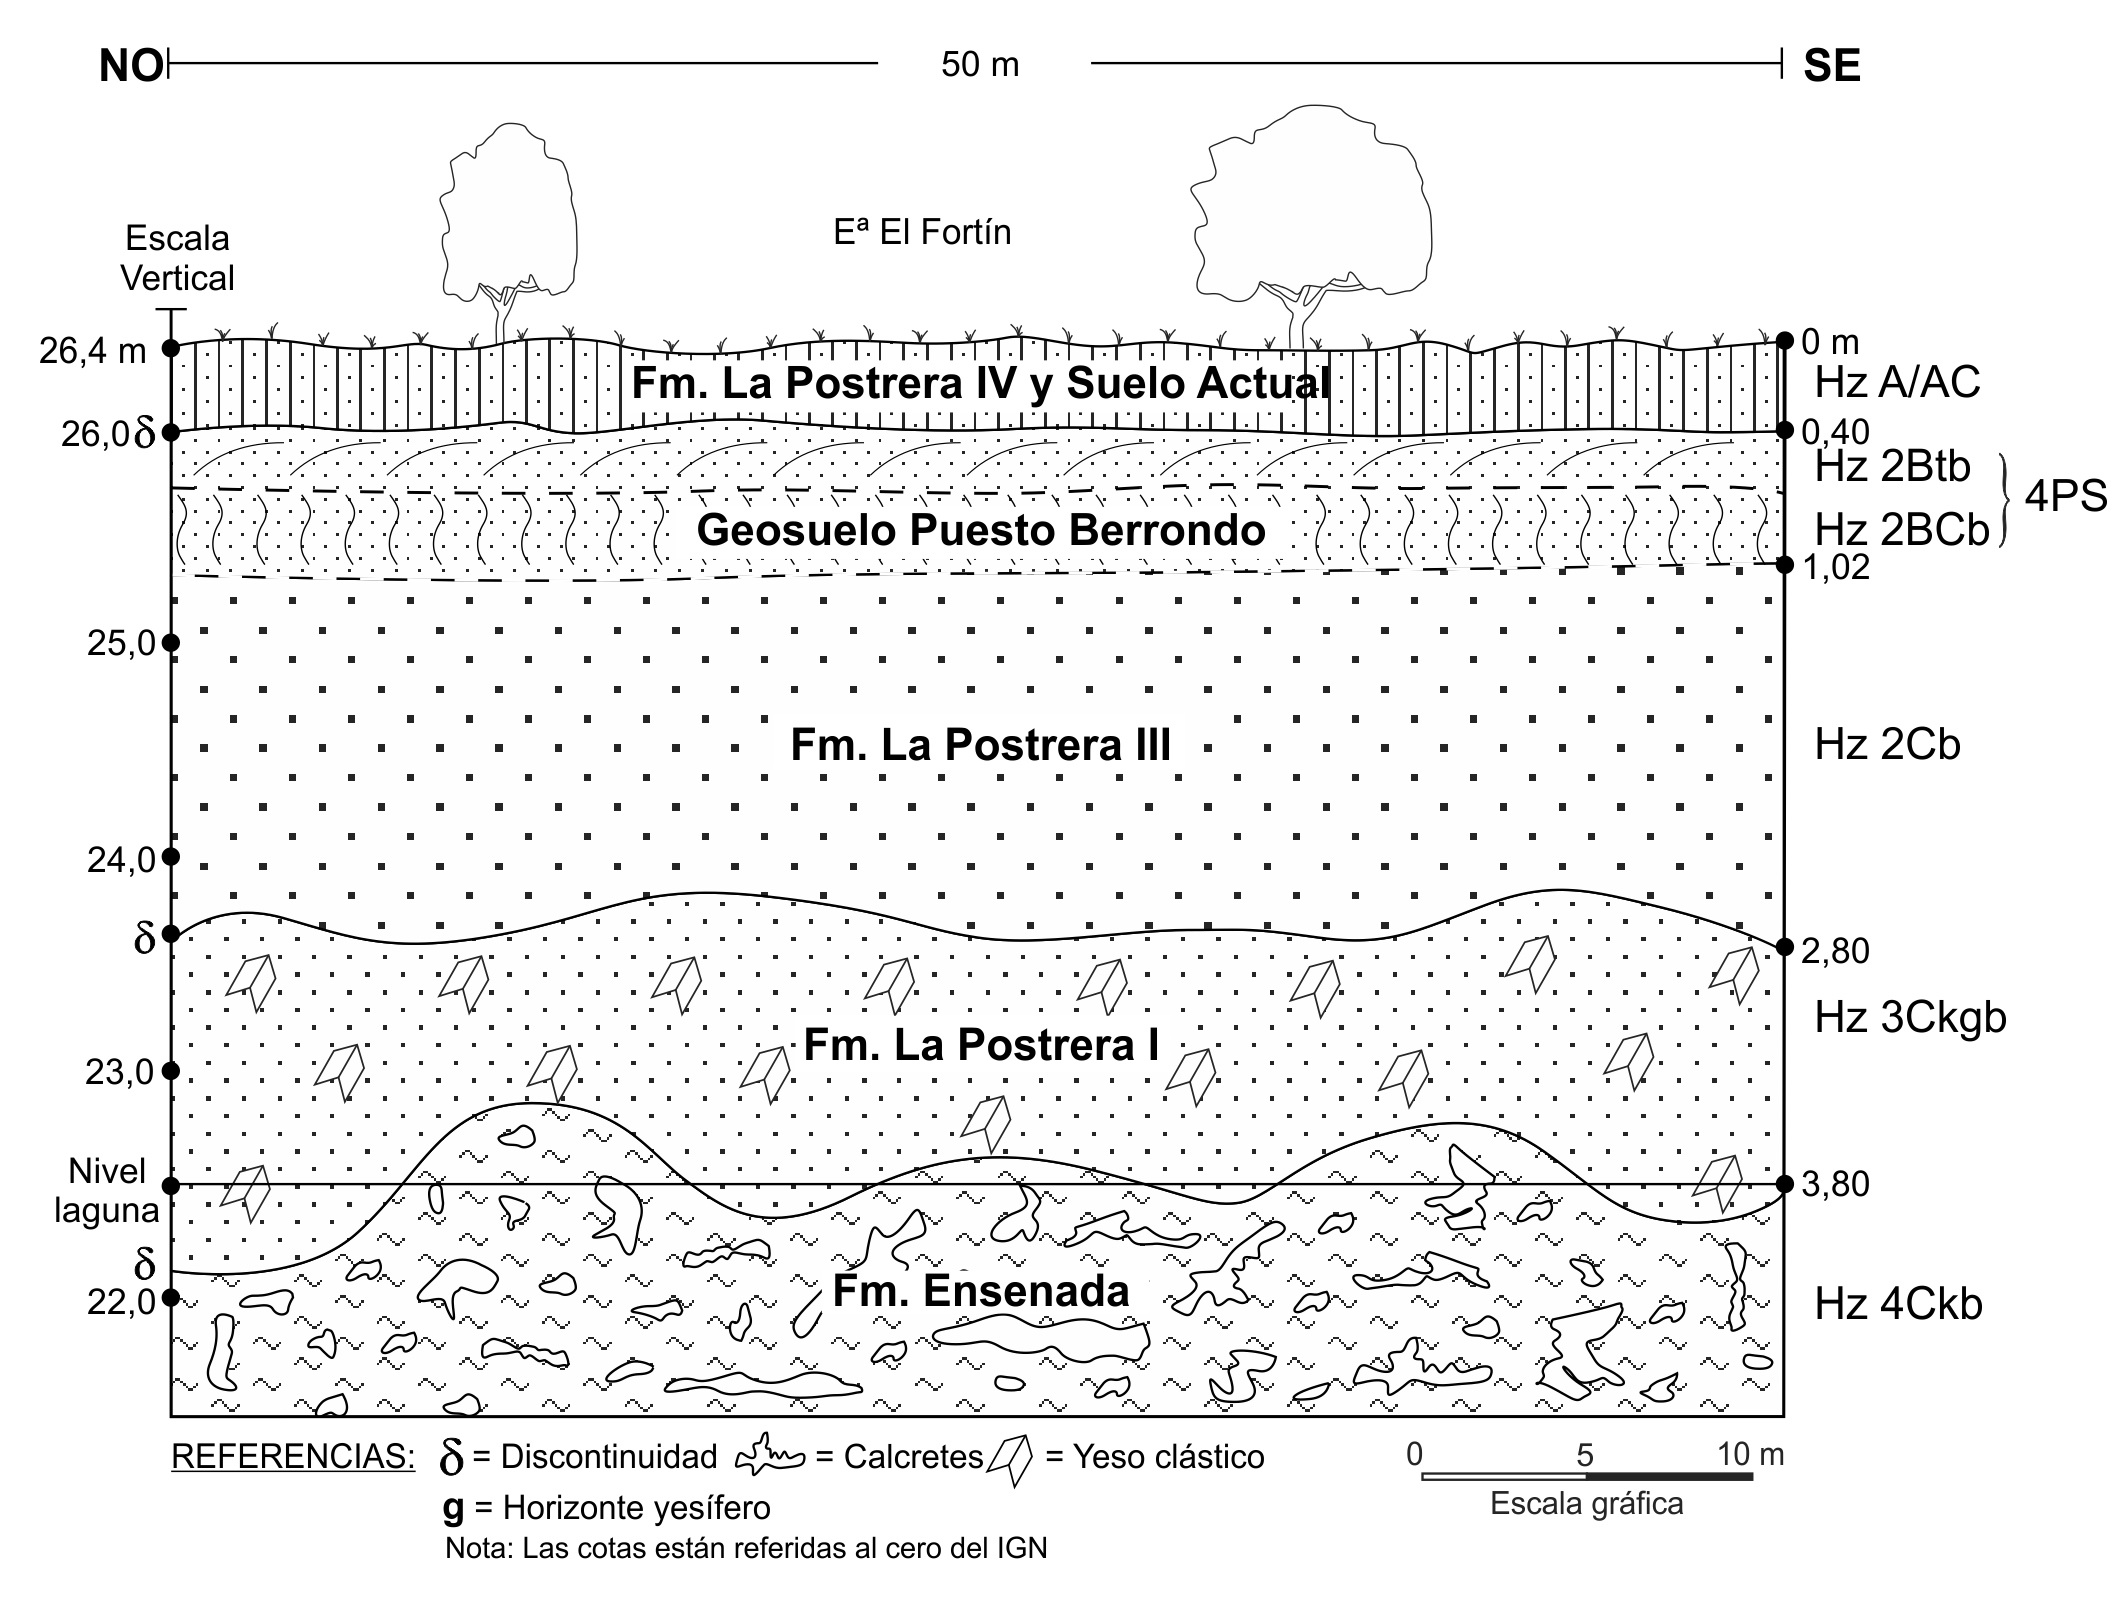 Perfil geológico de la escarpa
de erosión de la costa NE, con las unidades estratigráficas indicadas según la nomenclatura
pedológica. Detalles pedológicos en la Figura 4.